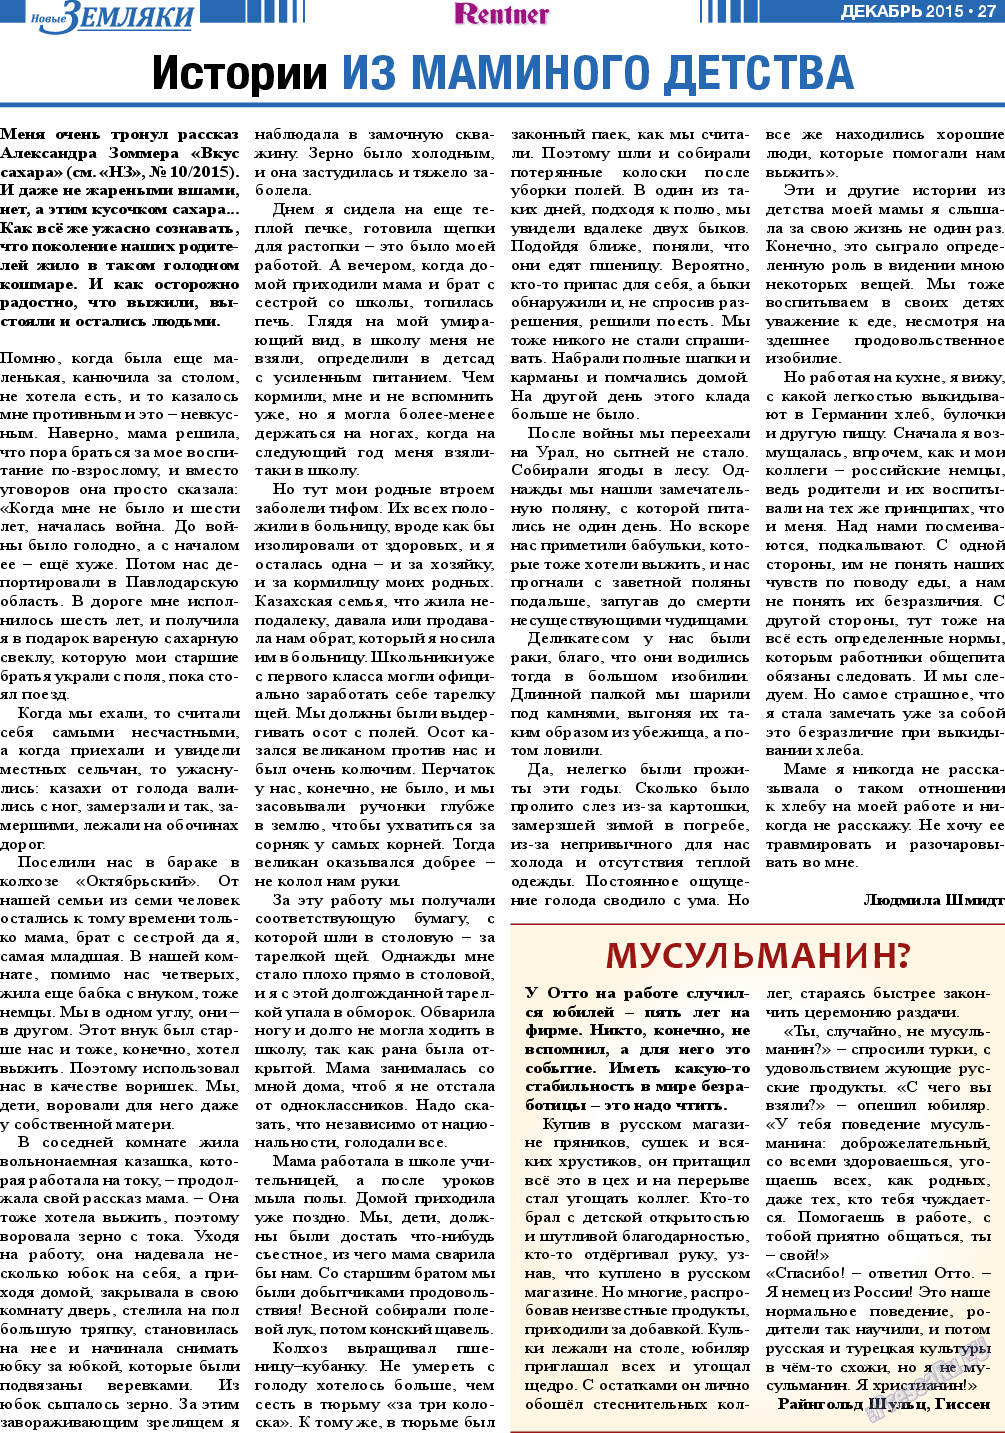 Новые Земляки, газета. 2015 №12 стр.27